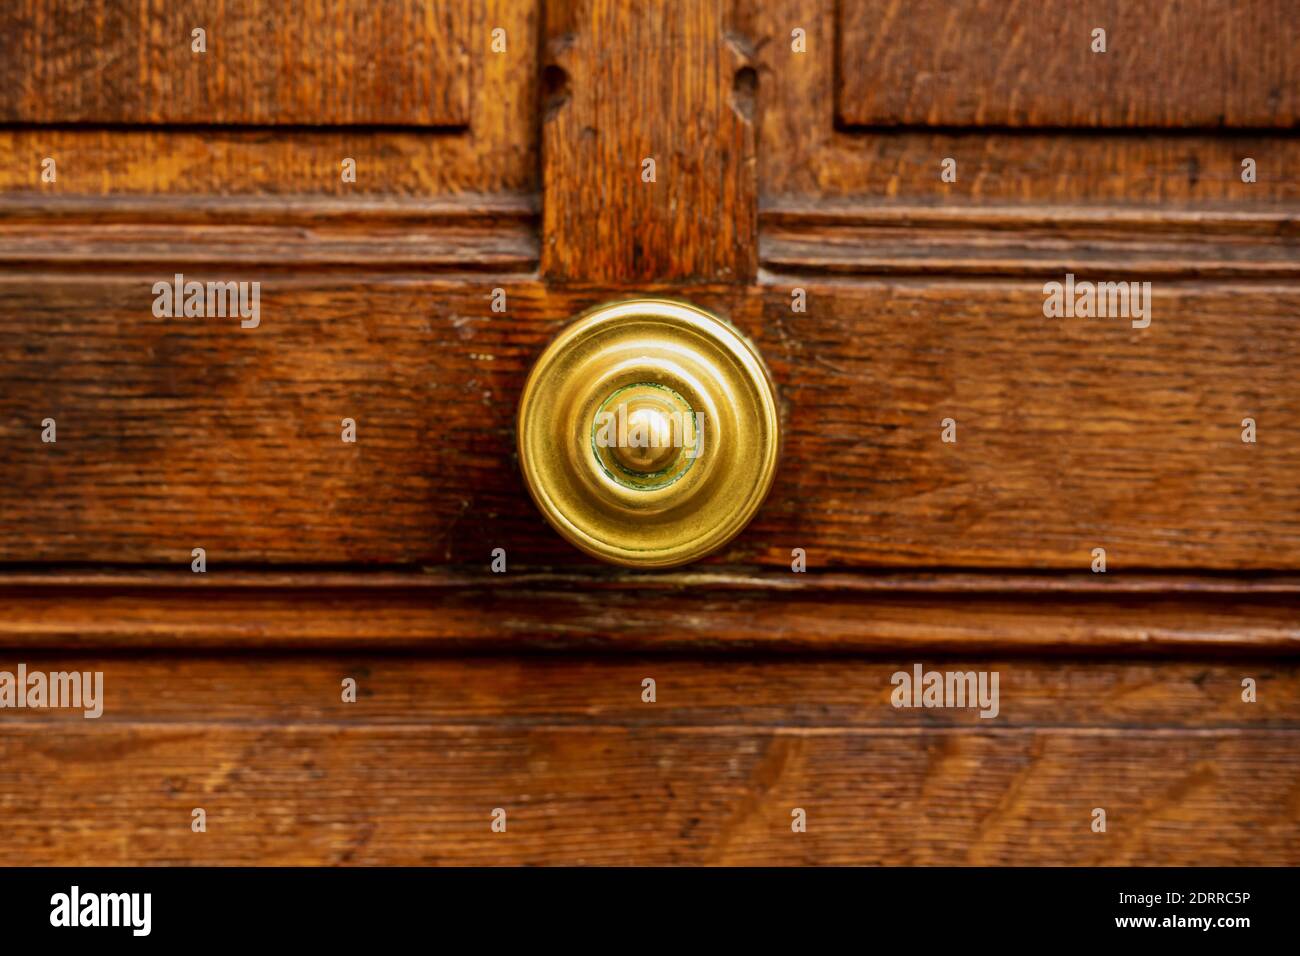 Ancienne poignée de porte ronde sur l'ancienne porte en bois marron. Gros  plan Paris, France. Détails en laiton doré sur l'ancienne porte en bois.  Poignée sur ancienne merde en bois Photo Stock -